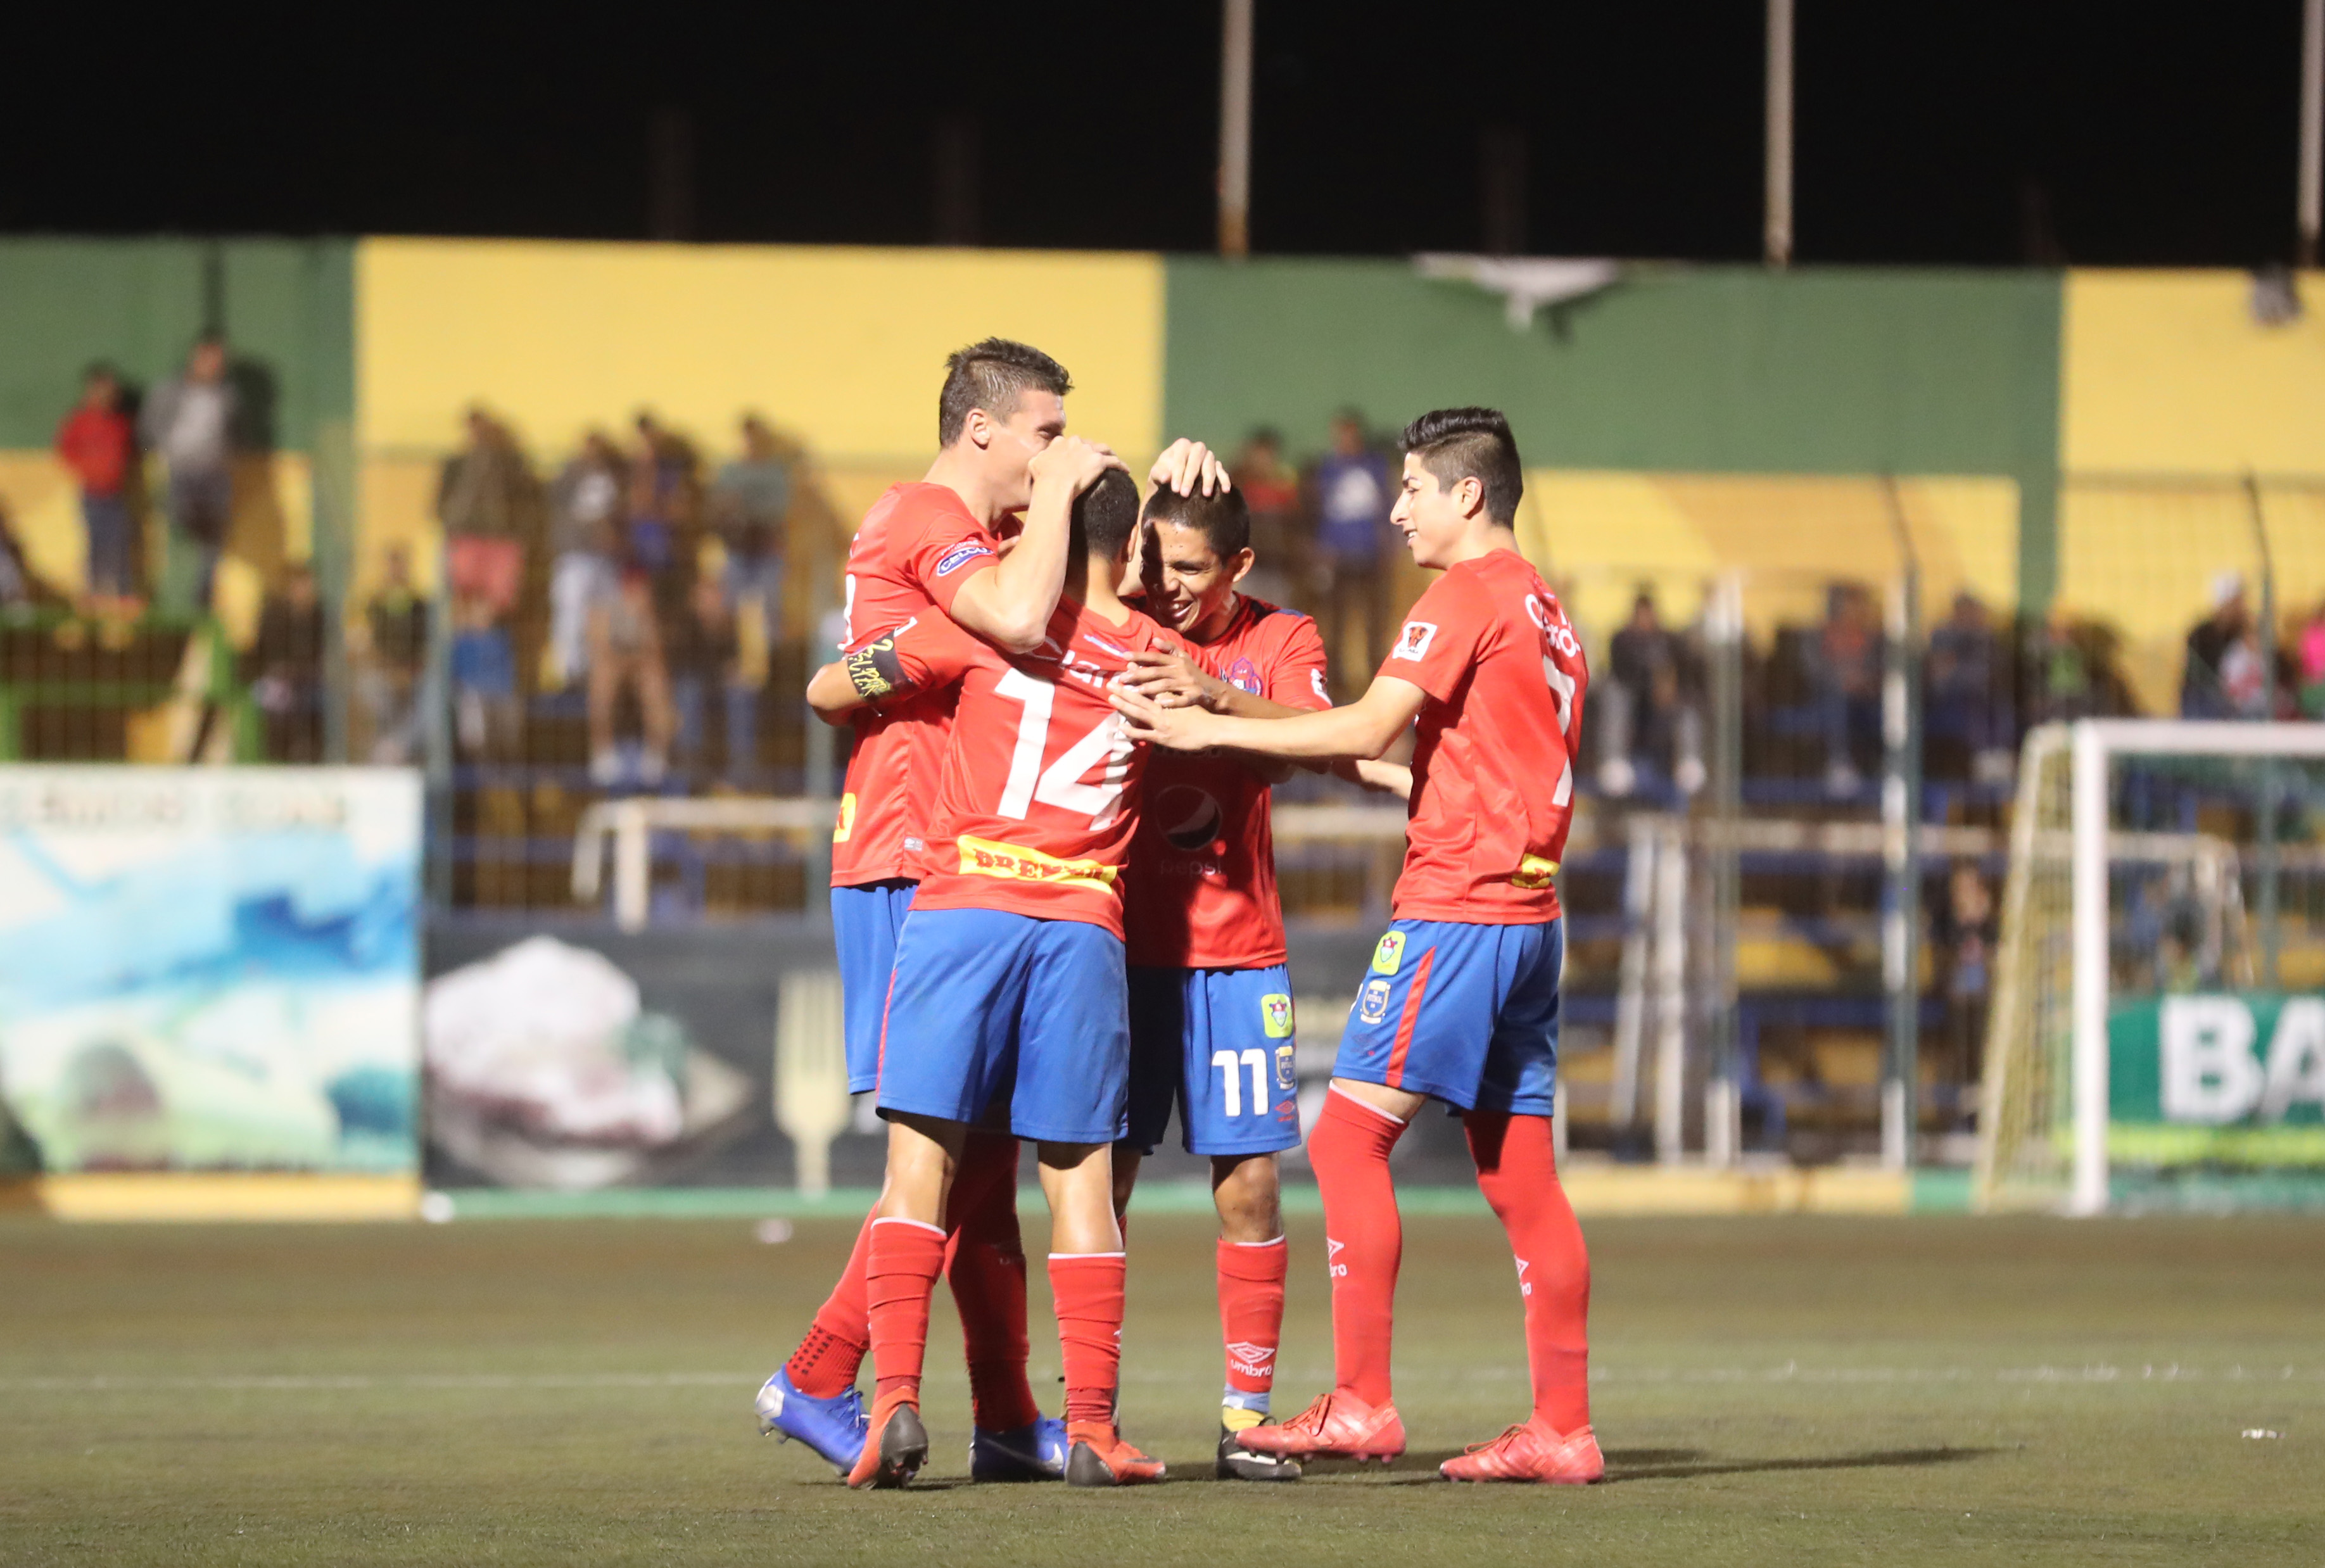 Los rojos vencieron a domicilio a Deportivo Petapa con goles de Carlos Alvarado y Jaime Alas. (Foto Prensa Libre: Edwin Fajardo)